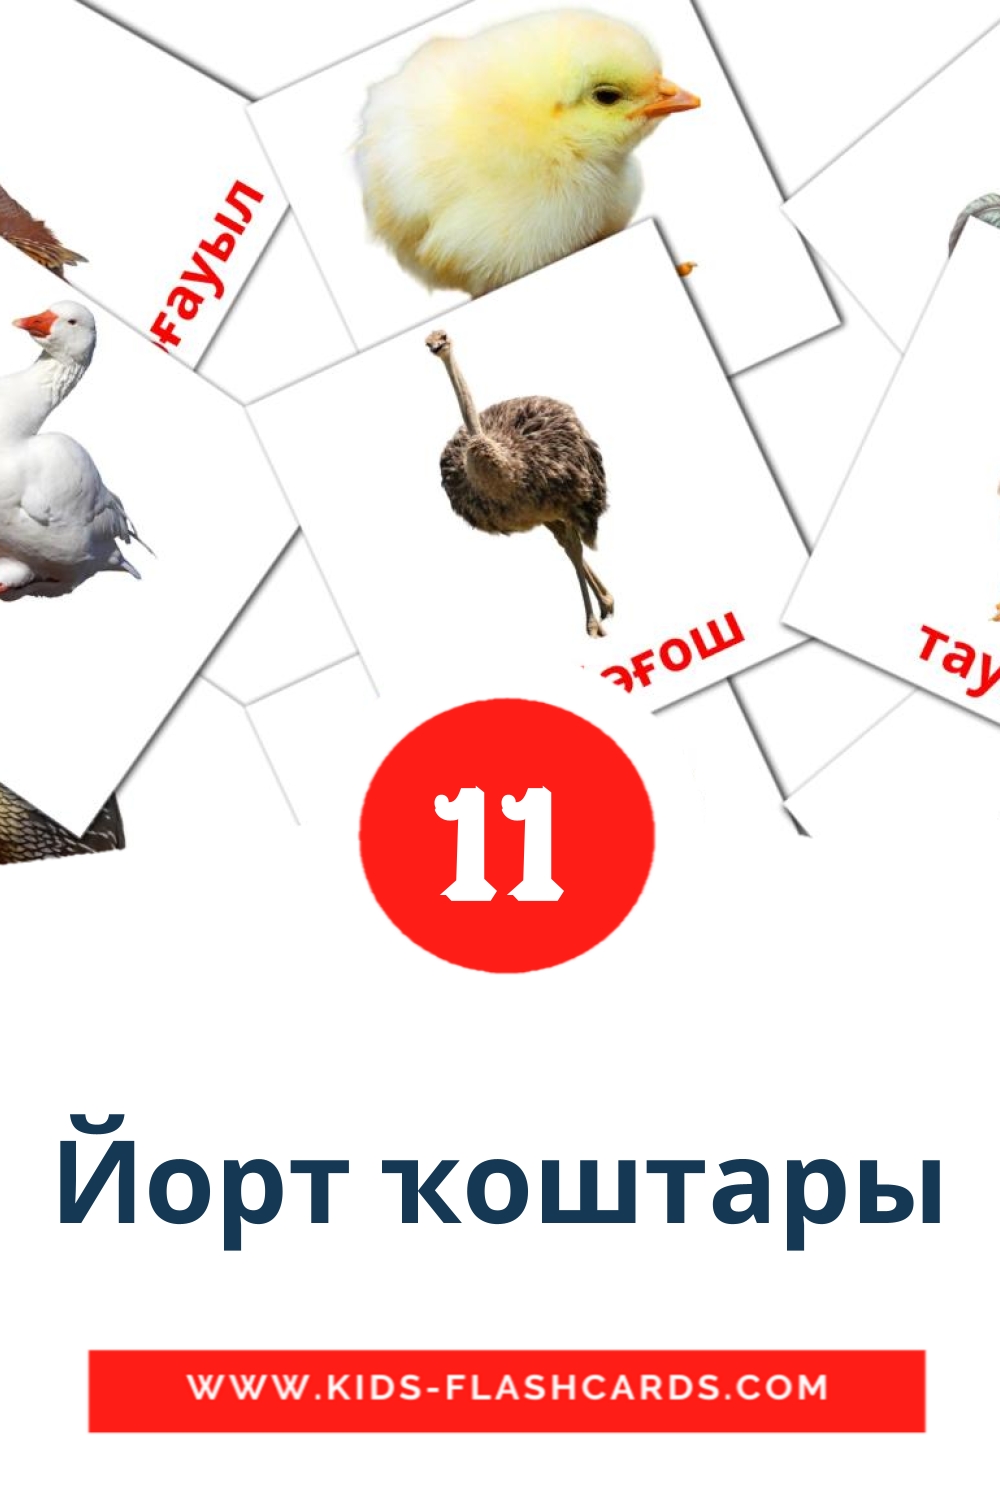 11 Йорт ҡоштары Bildkarten für den Kindergarten auf bashkir